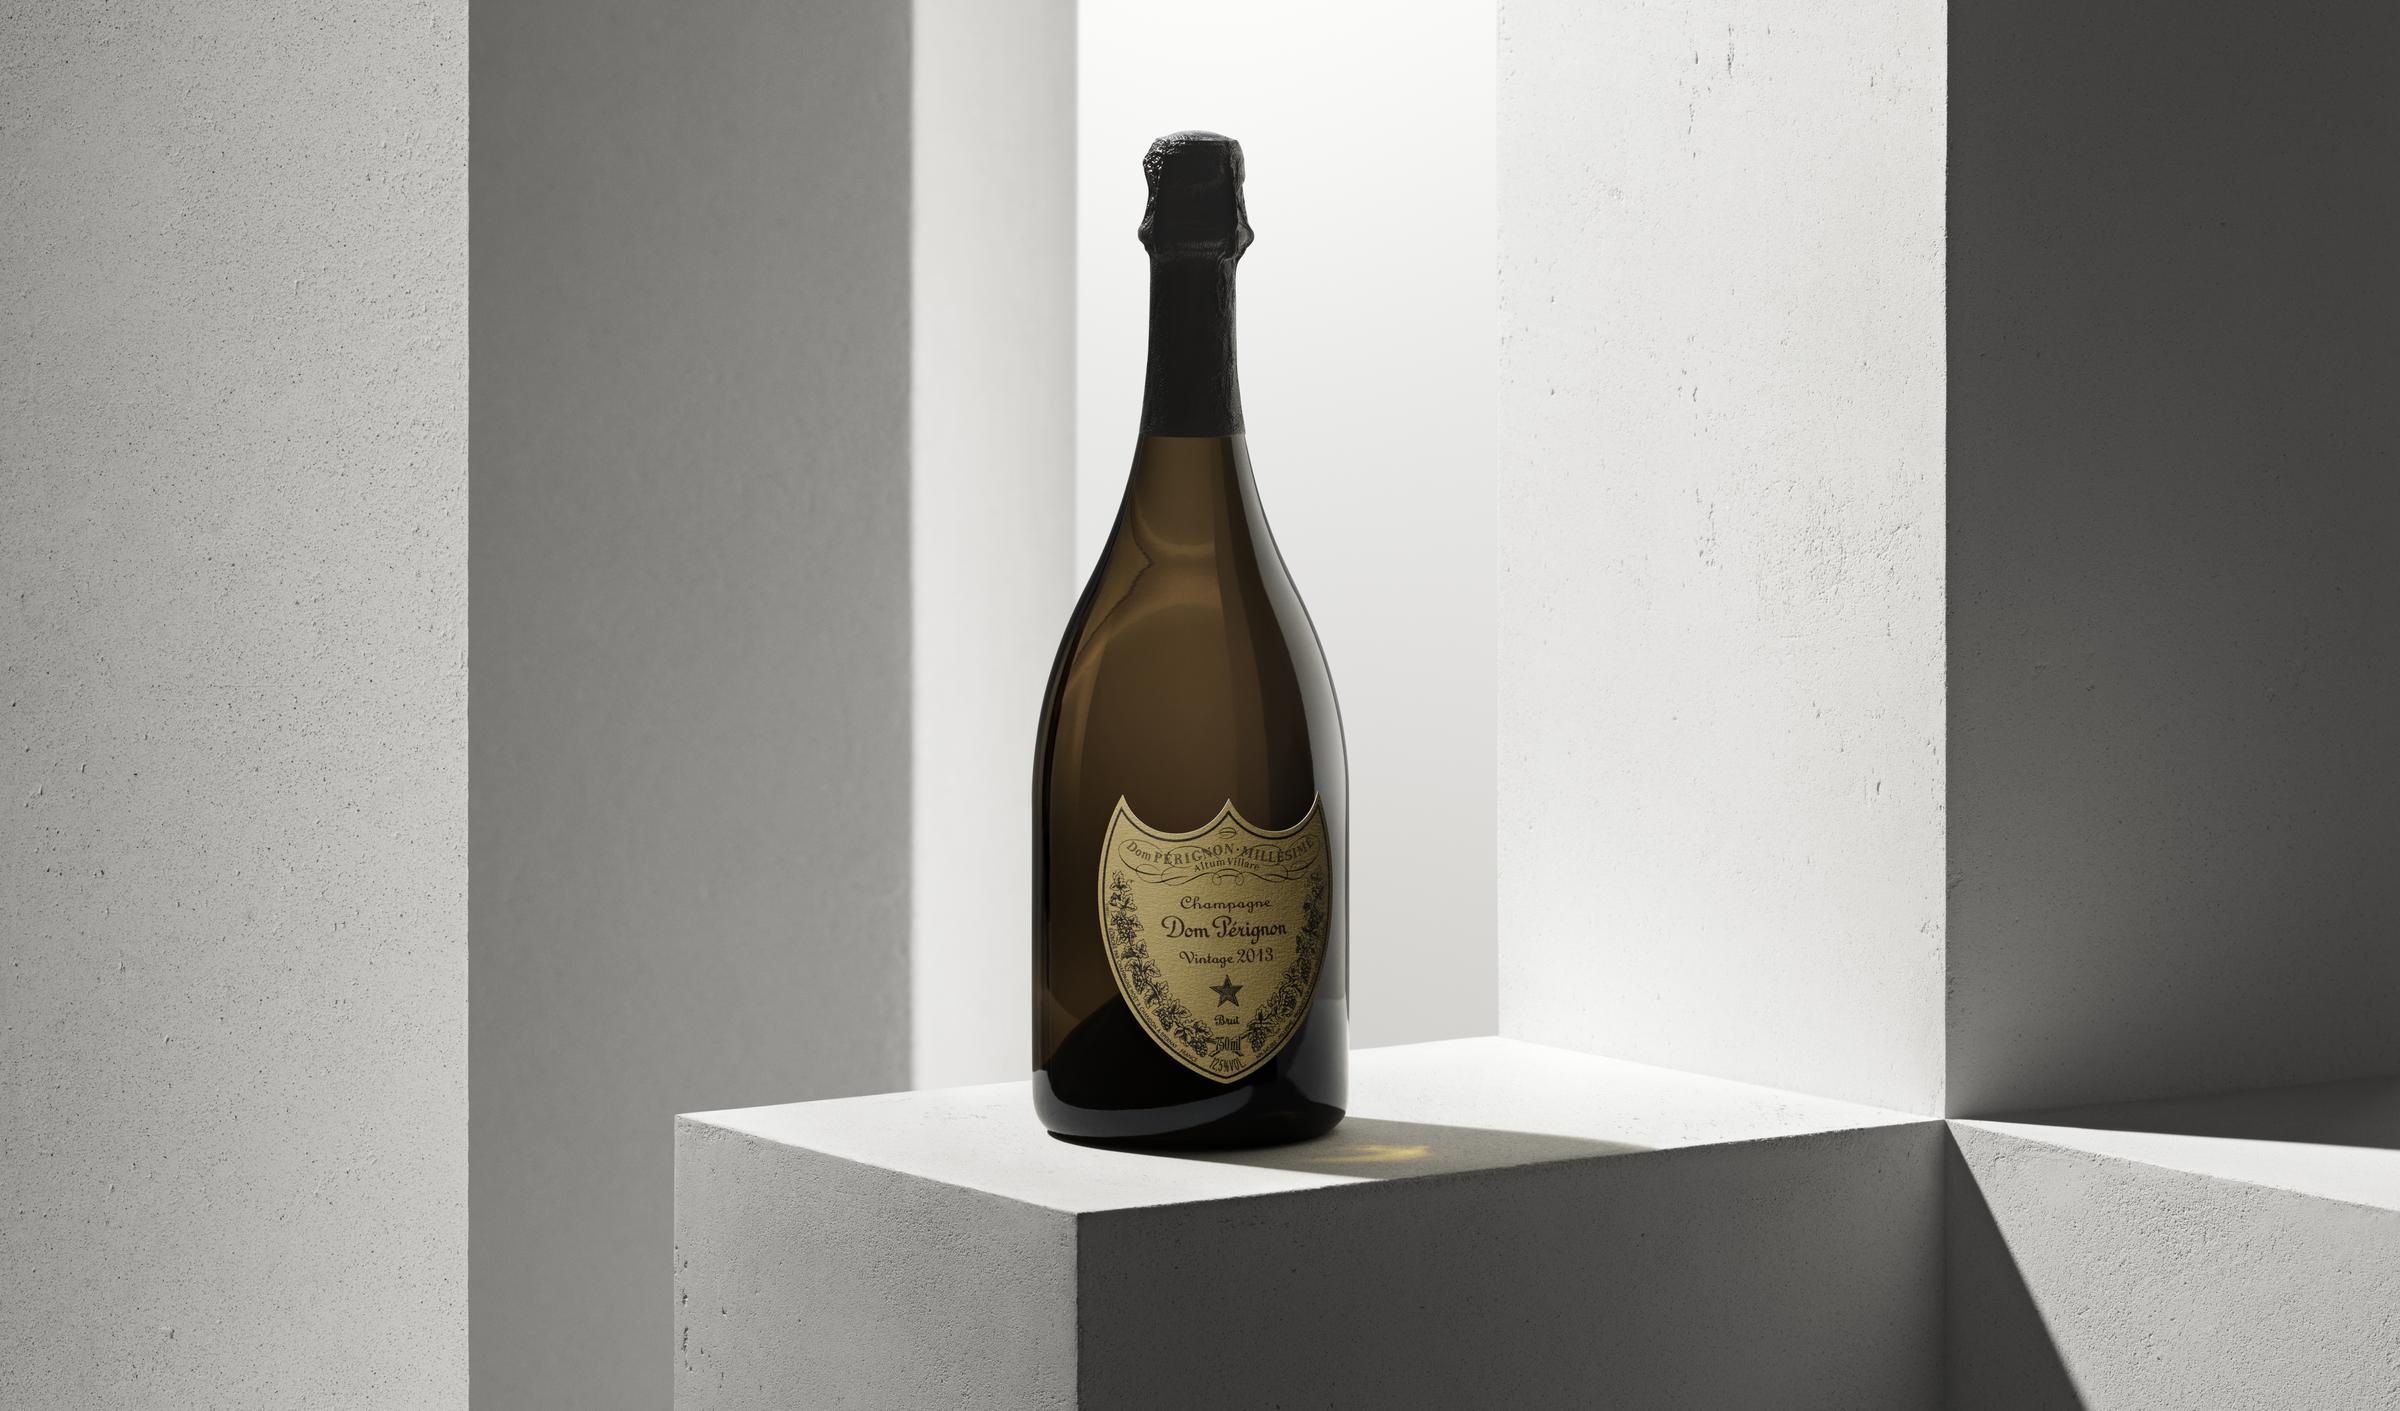 Dom Pérignon Vintage 2013 bouteille sur craie